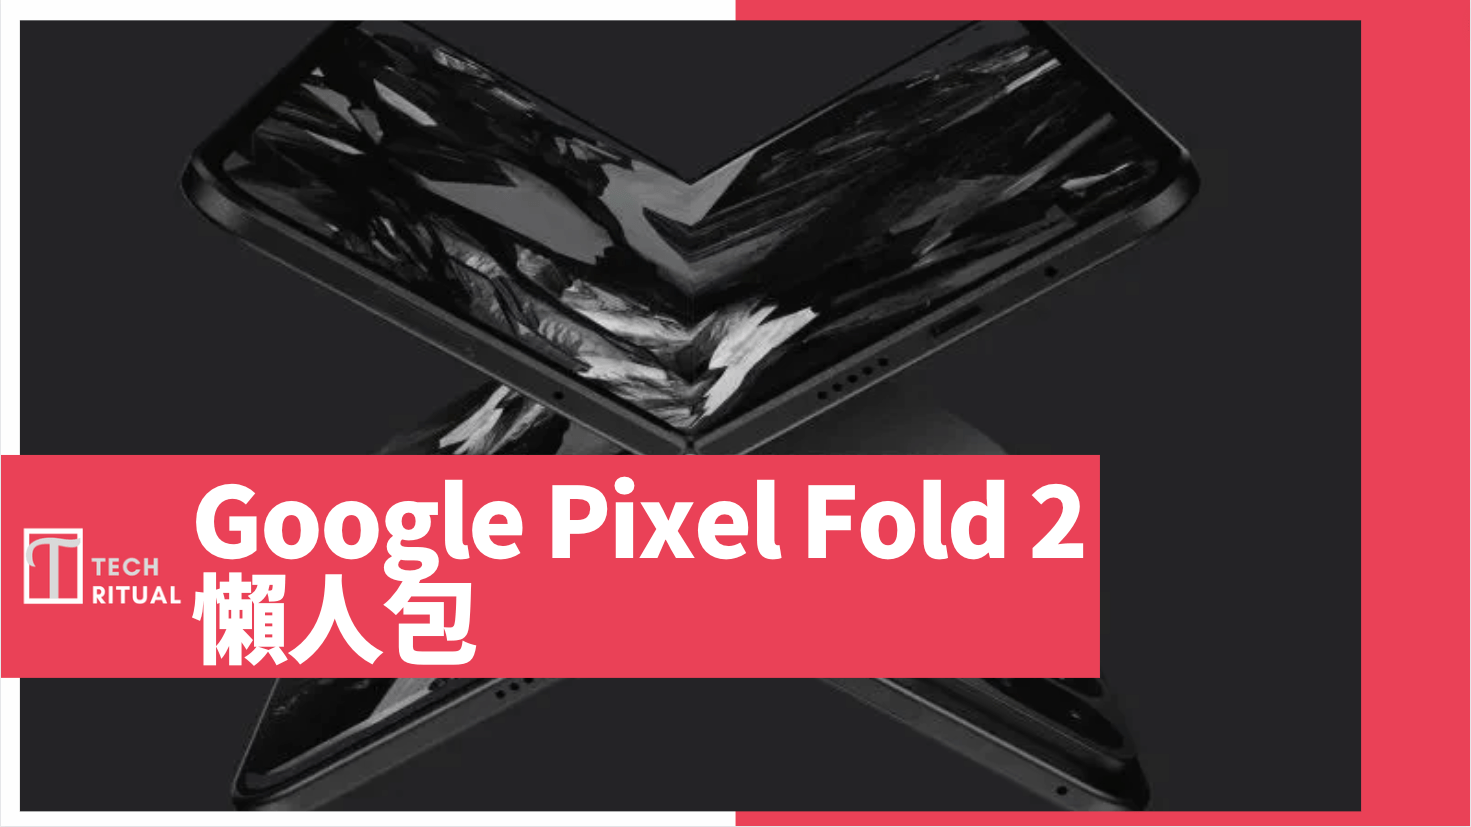 【說明】Google Pixel Fold 2 懶人包：摺疊設計、Tesor G3 處理器、公開日期與售價